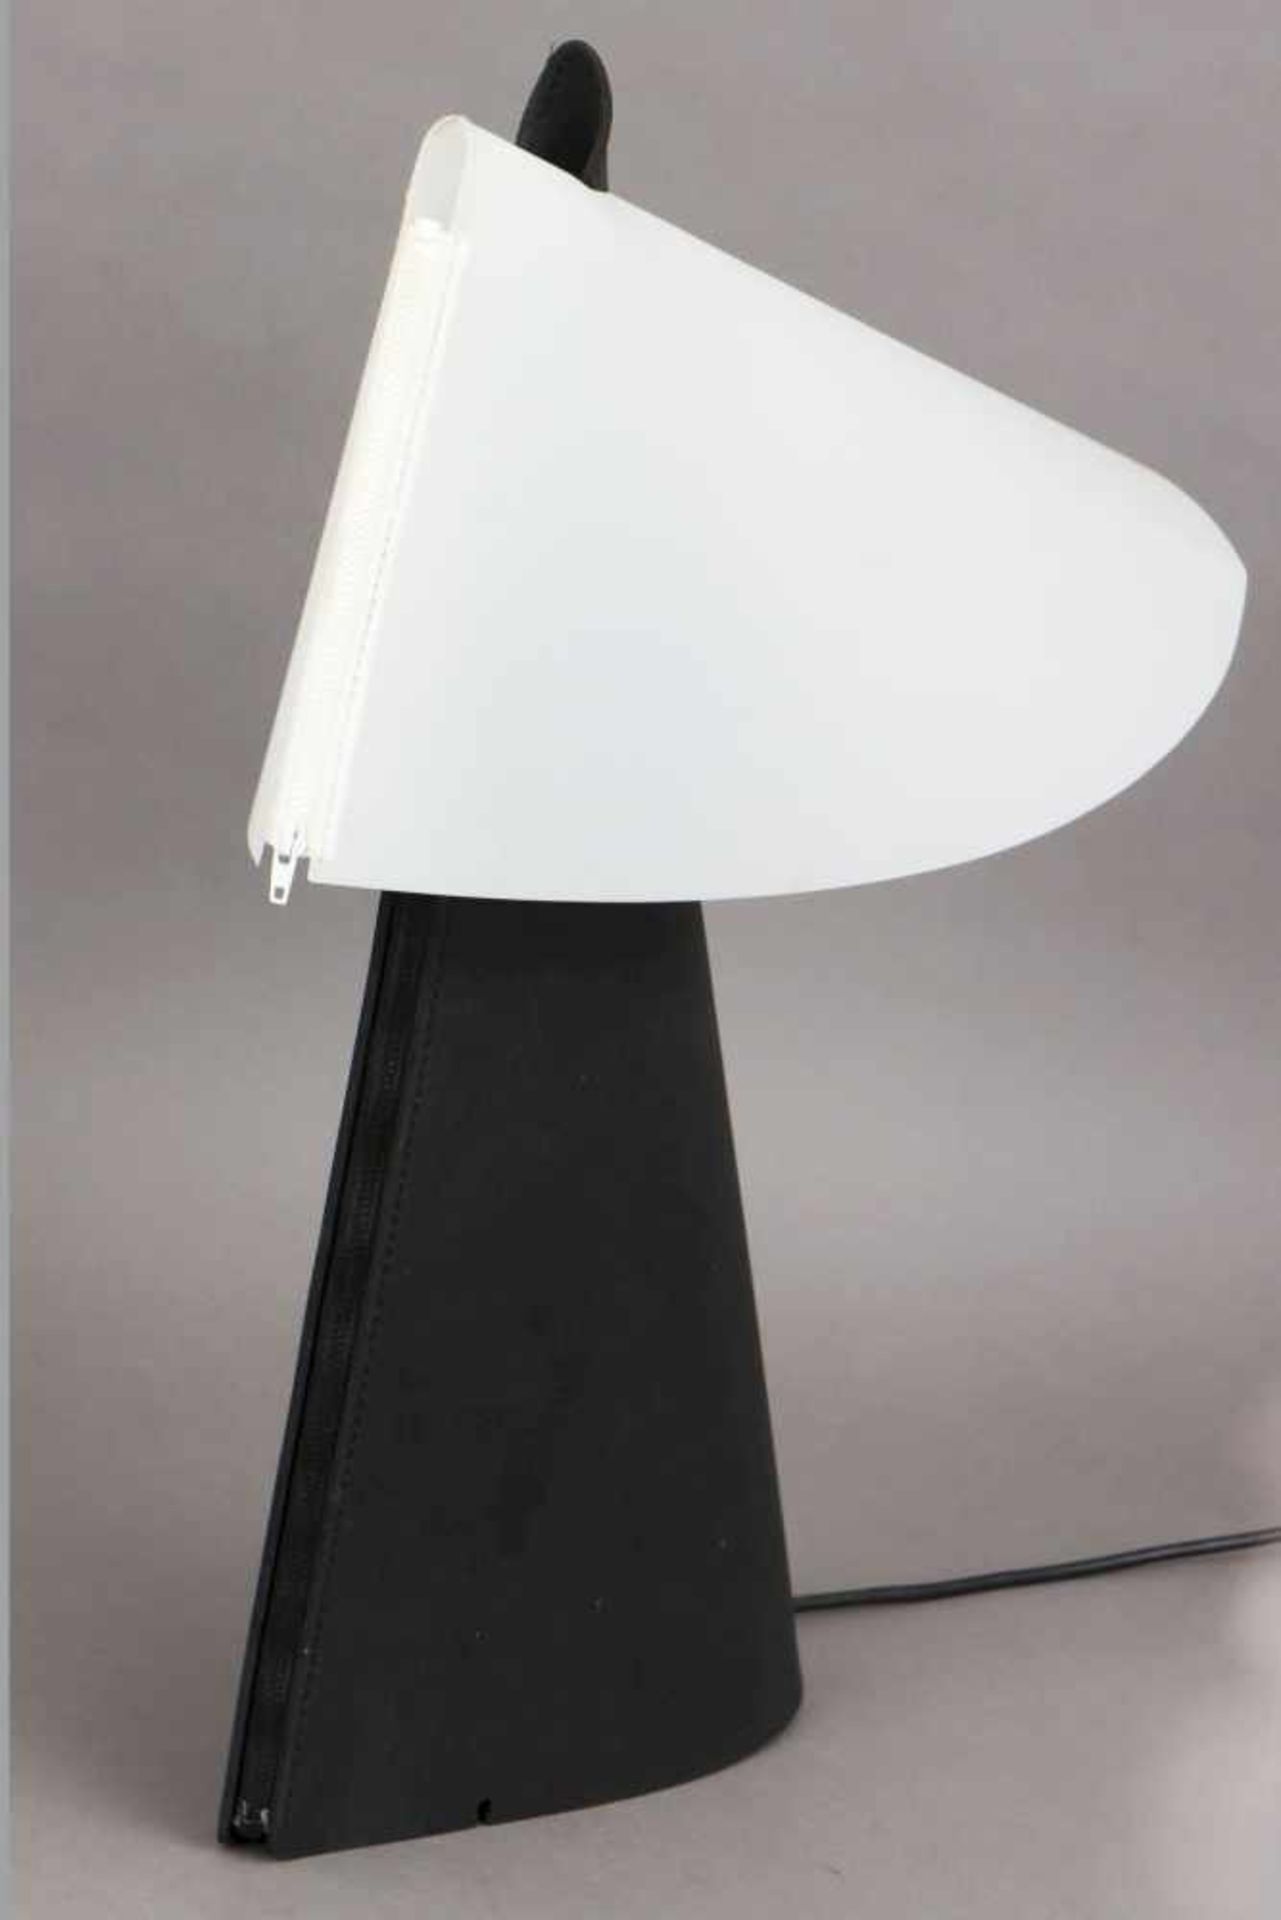 Tischlampe ¨Zip Light¨ Entwurf Sigmar Willnauer aus dem Jahr 1994, Hersteller Naos, konischer Stand - Bild 2 aus 2